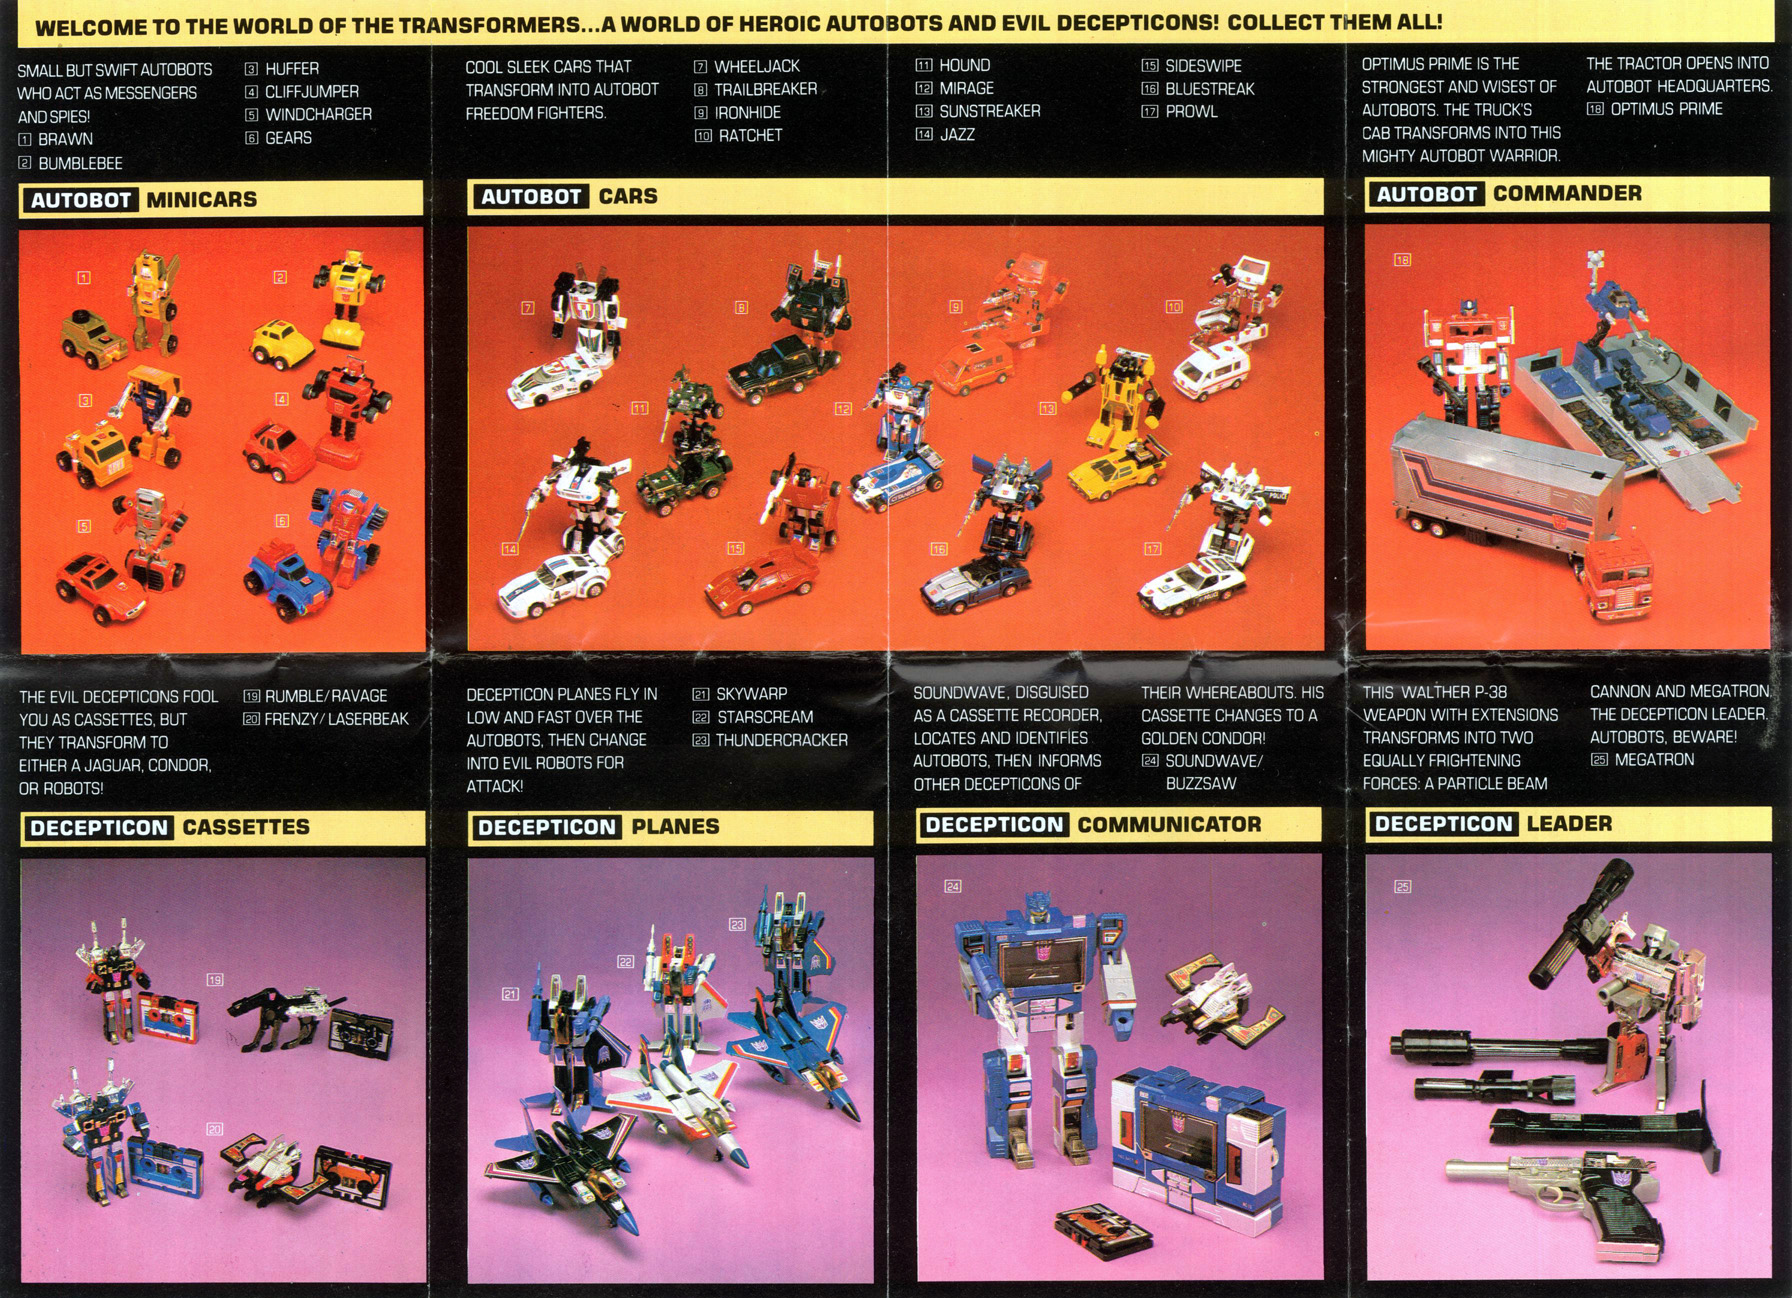 original transformers toys 1984